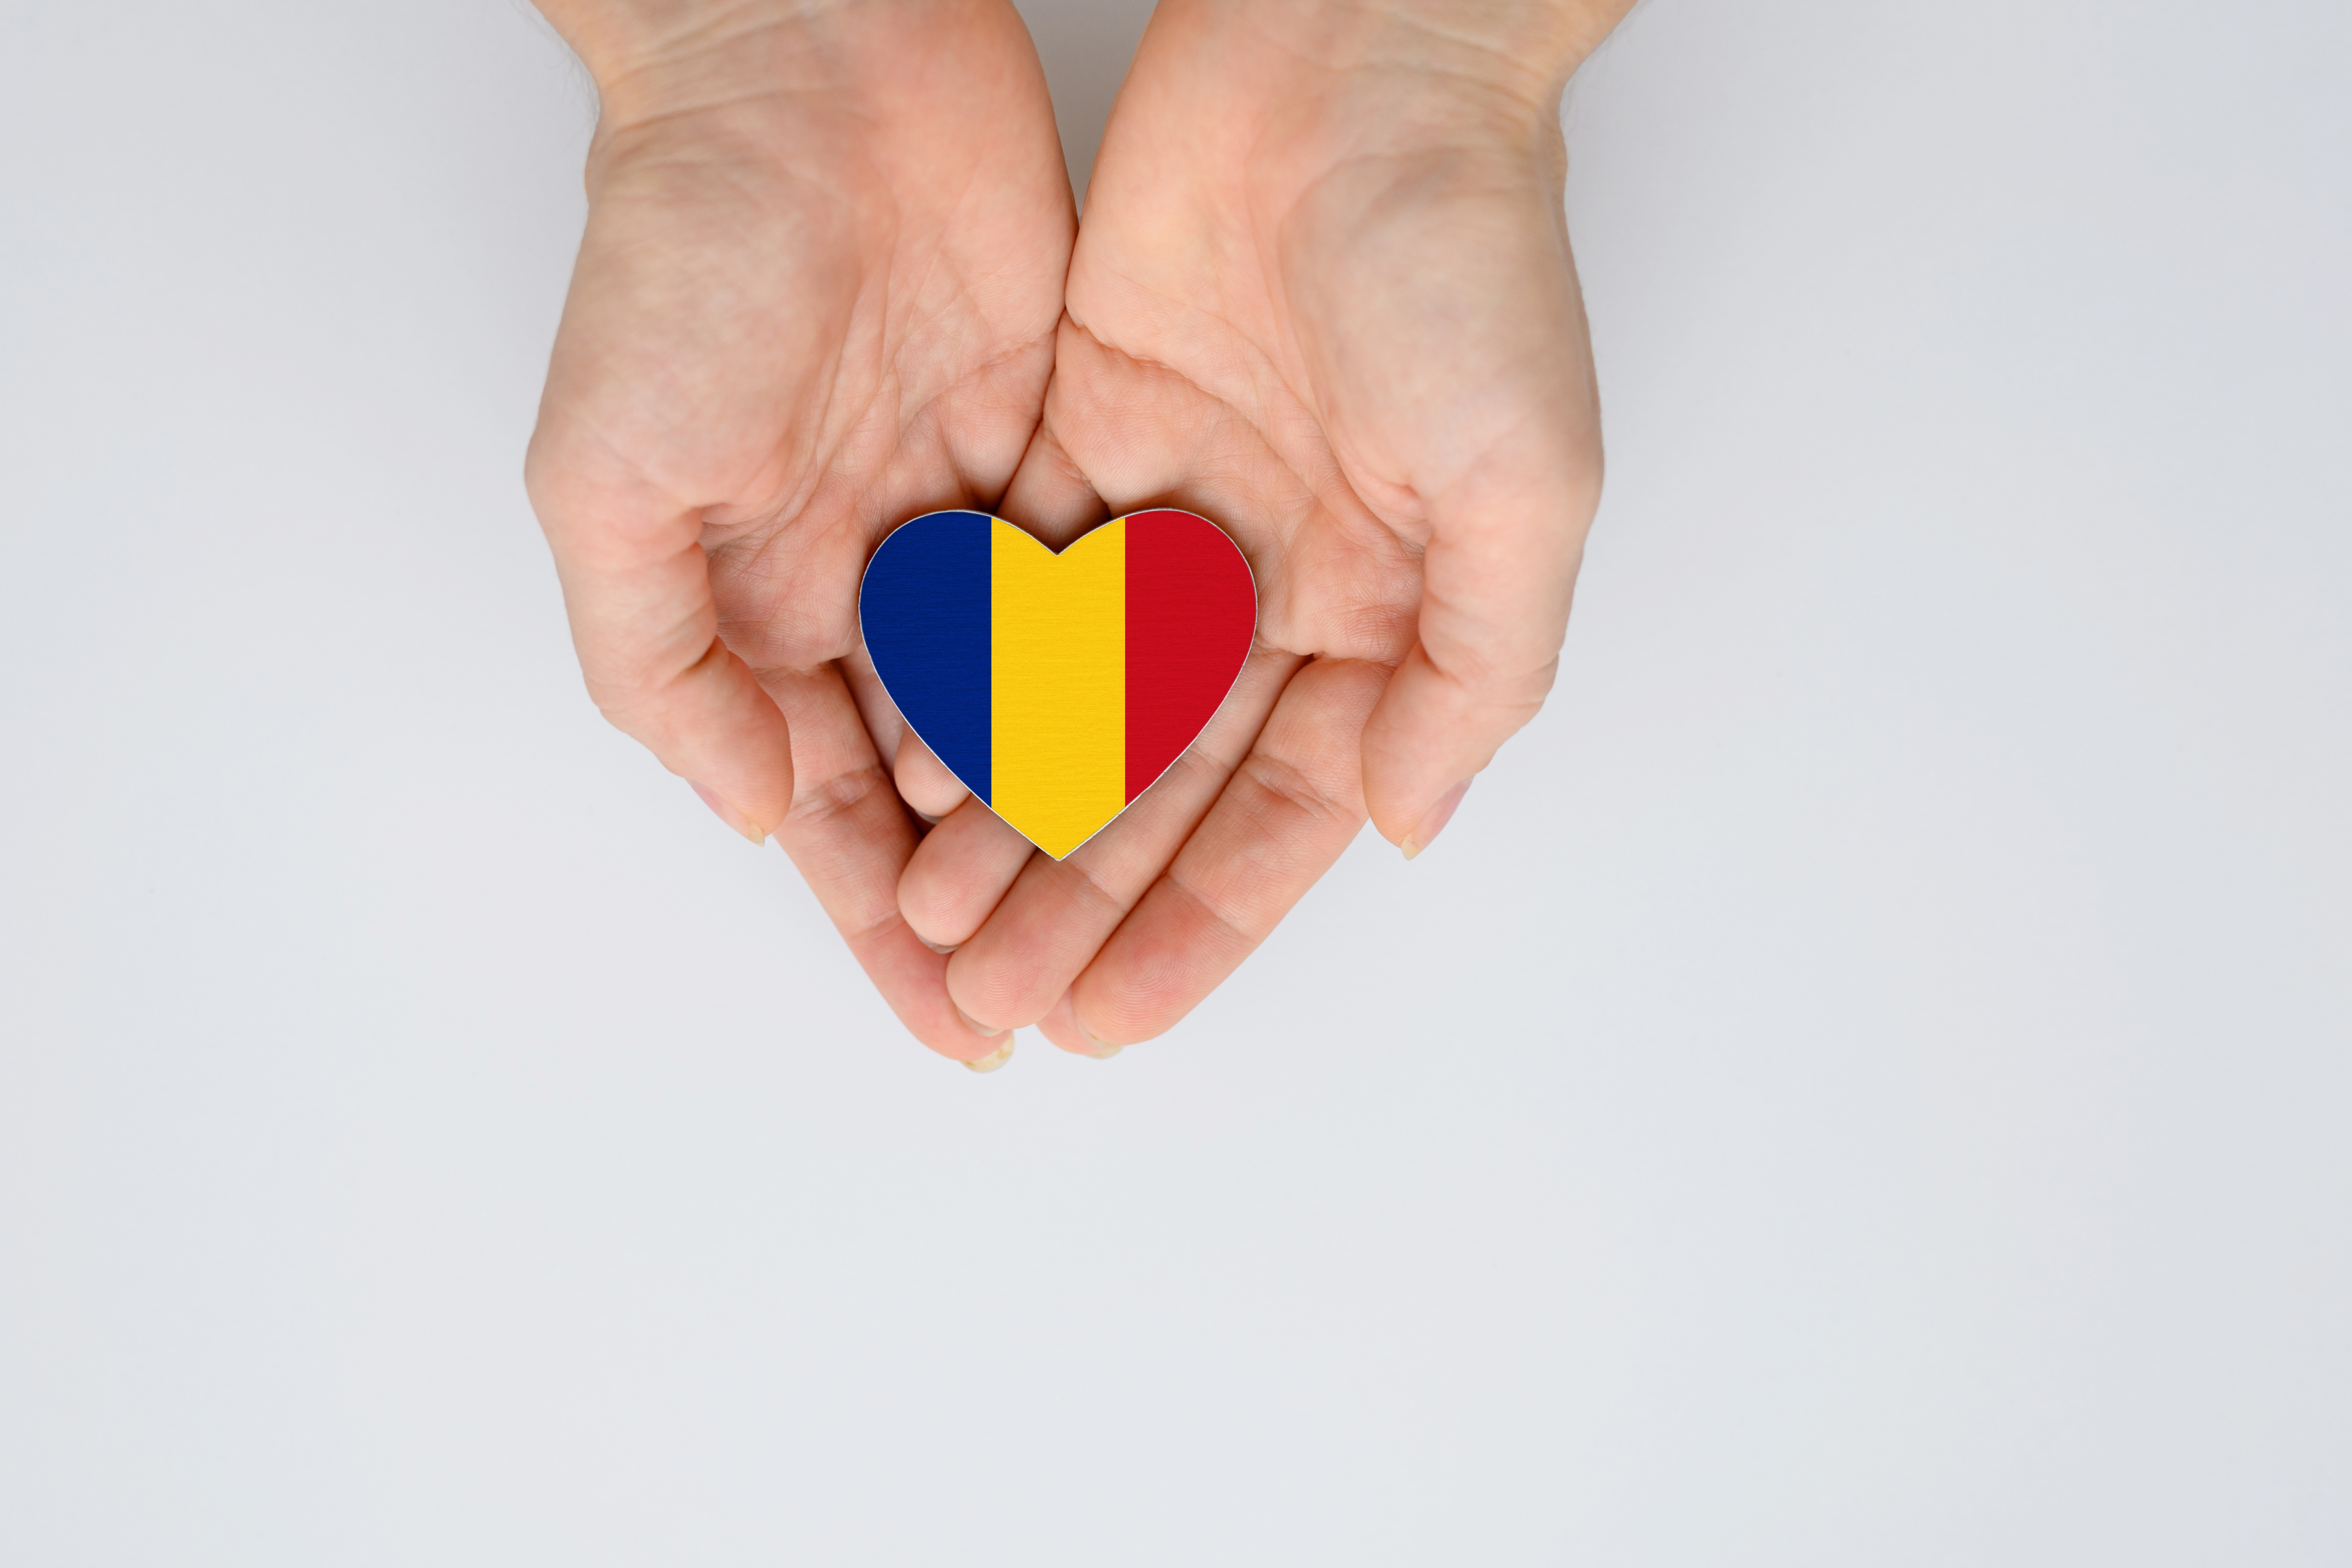 Флаг Румынии, страны, где получить паспорт могут иностранцы